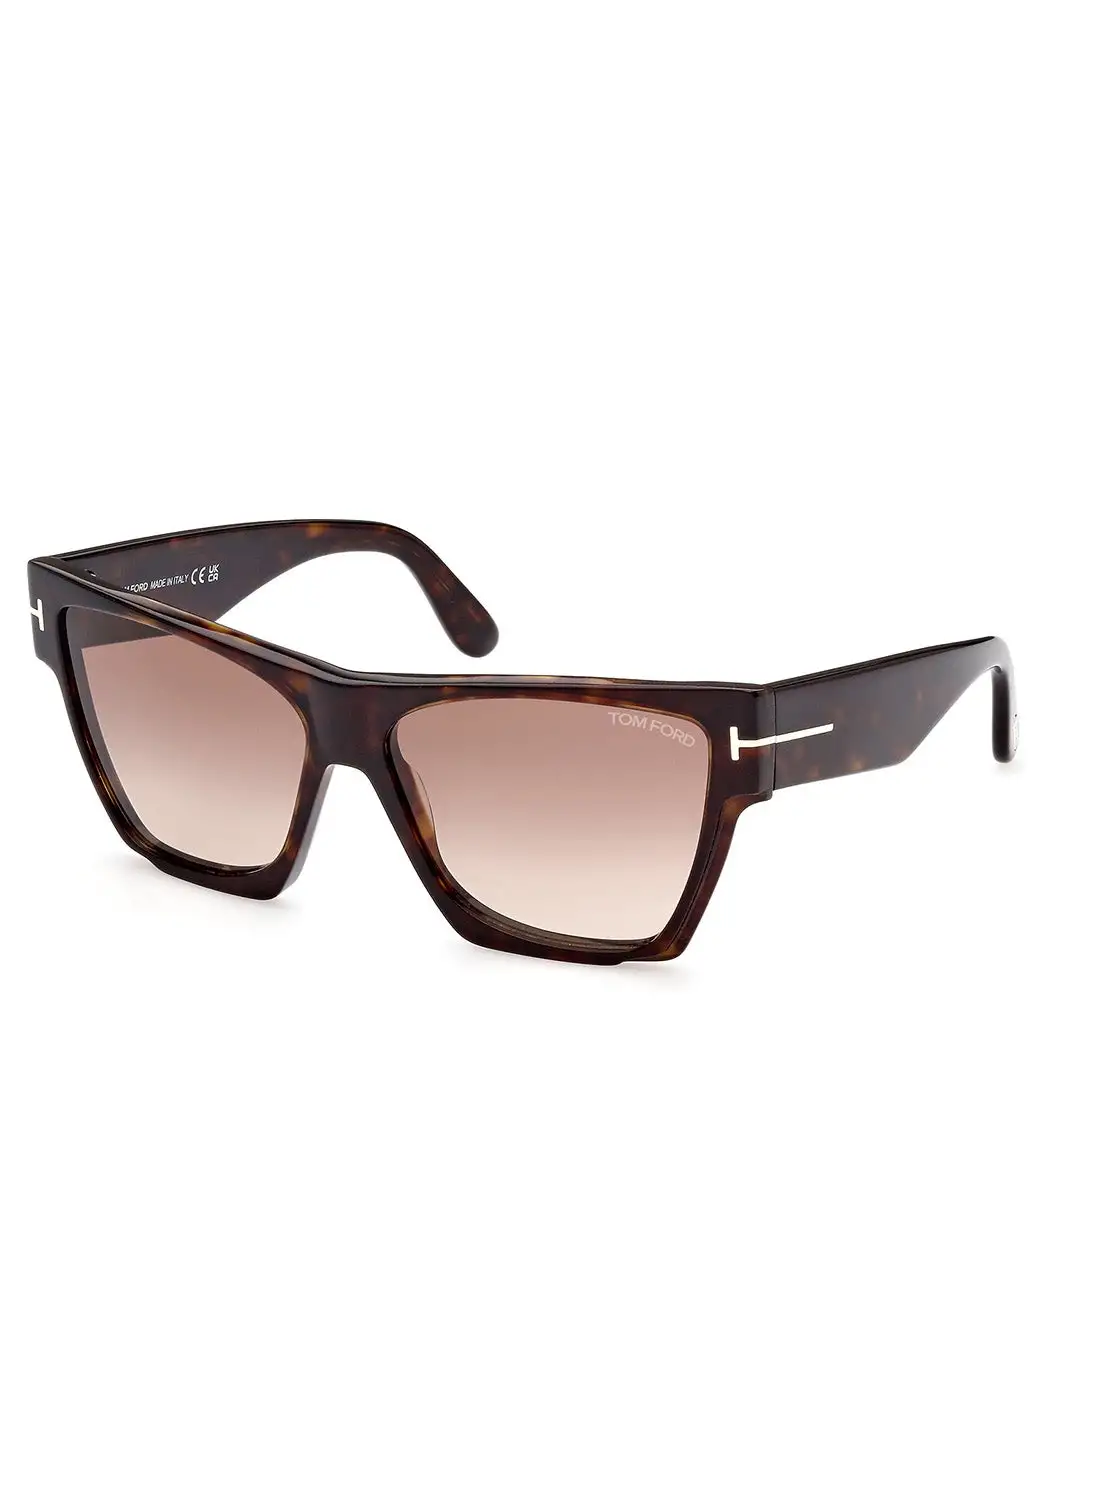 TOM FORD Women's UV Protection Asymmetrical Sunglasses - FT094252K59 - Lens Size: 59 Mm